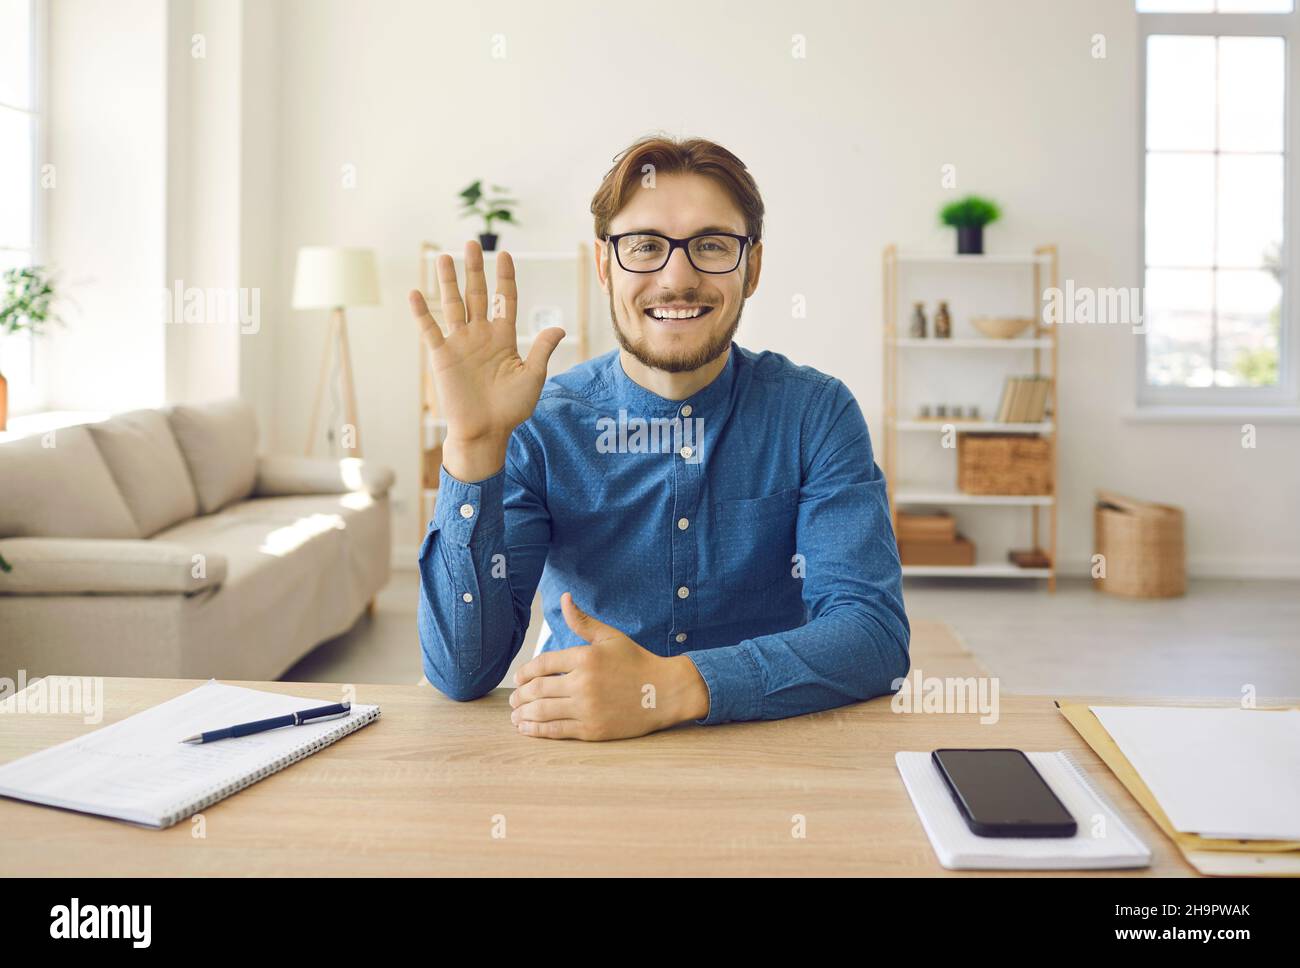 Freundlicher junger Mann, der seine Hand vor der Webcam schwenkt und die Teilnehmer zu einem Online-Meeting begrüßt. Stockfoto